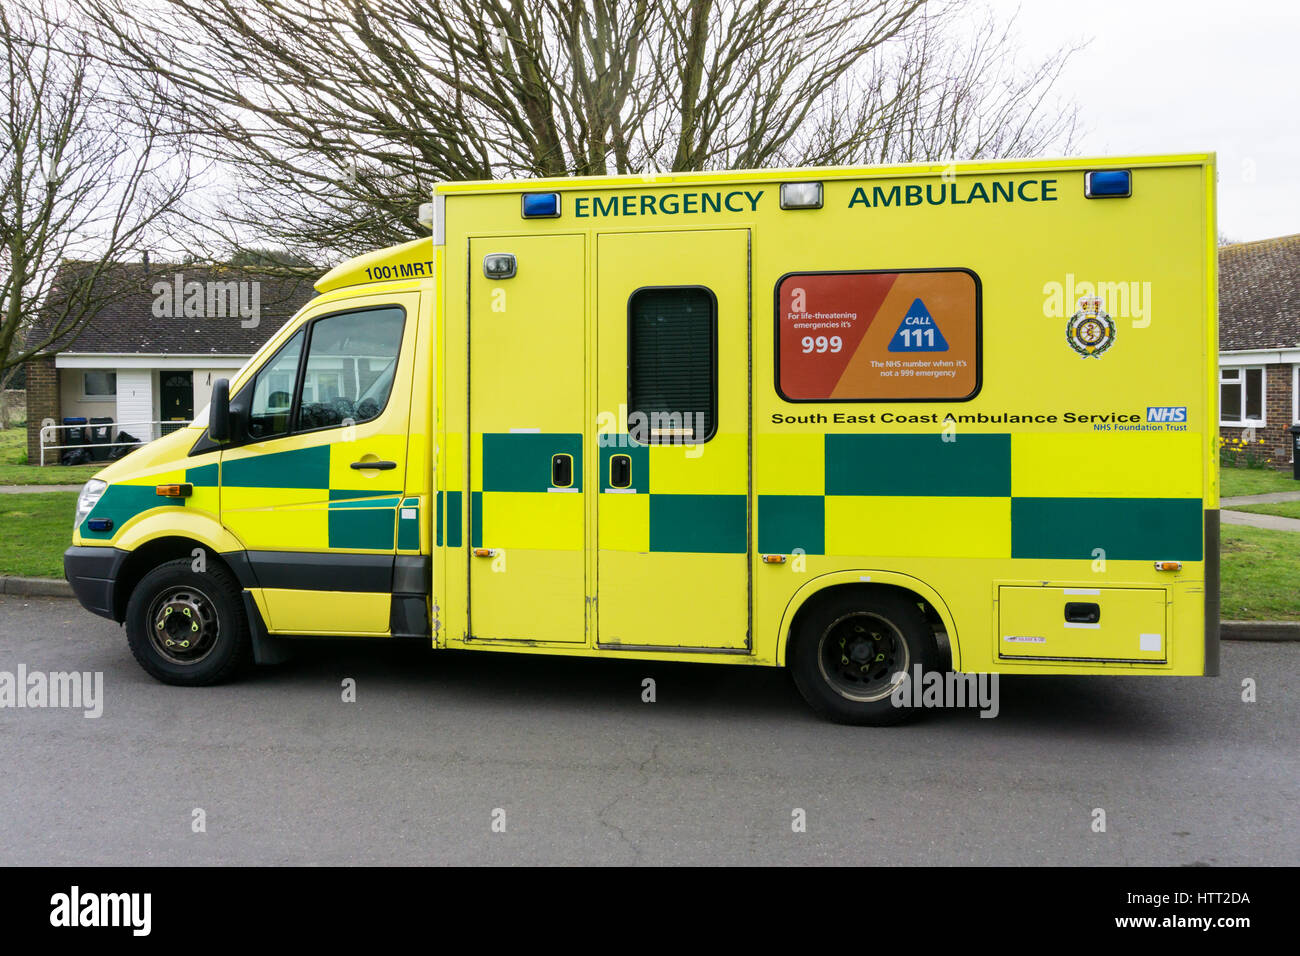 999 & 111 numeri di telefono viene visualizzato sul lato di una ambulanza dalla costa sud orientale Ambulance Service NHS Foundation Trust. Foto Stock